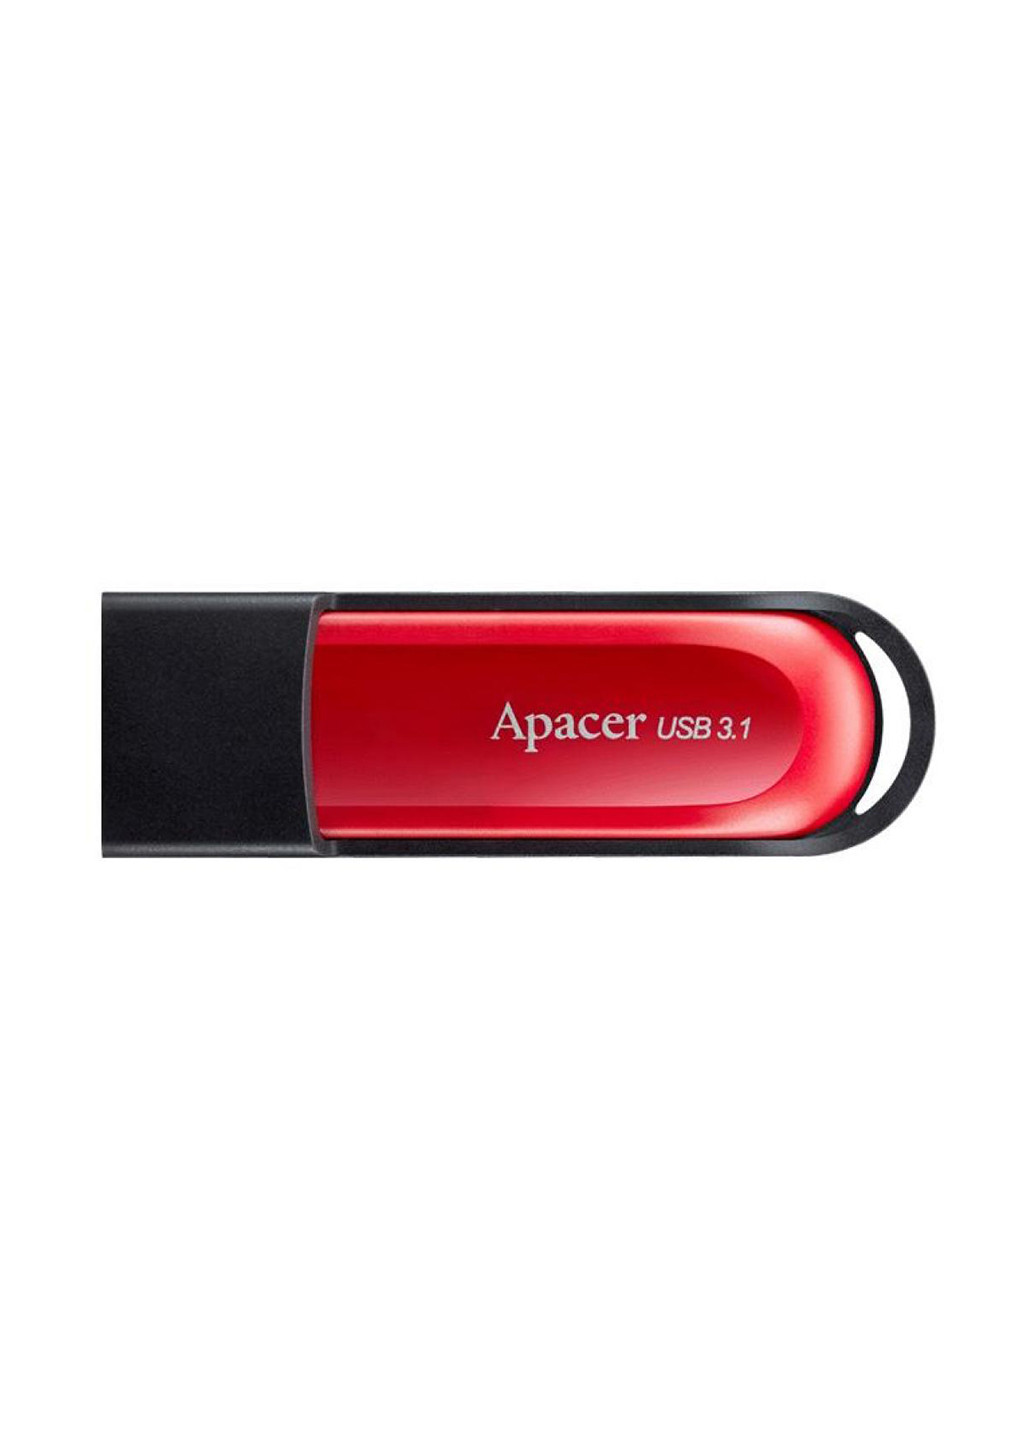 Флеш пам'ять USB AH25A 64GB USB 3.1 Red / Black (AP64GAH25AB-1) Apacer флеш память usb apacer ah25a 64gb usb 3.1 red/black (ap64gah25ab-1) (135165436)